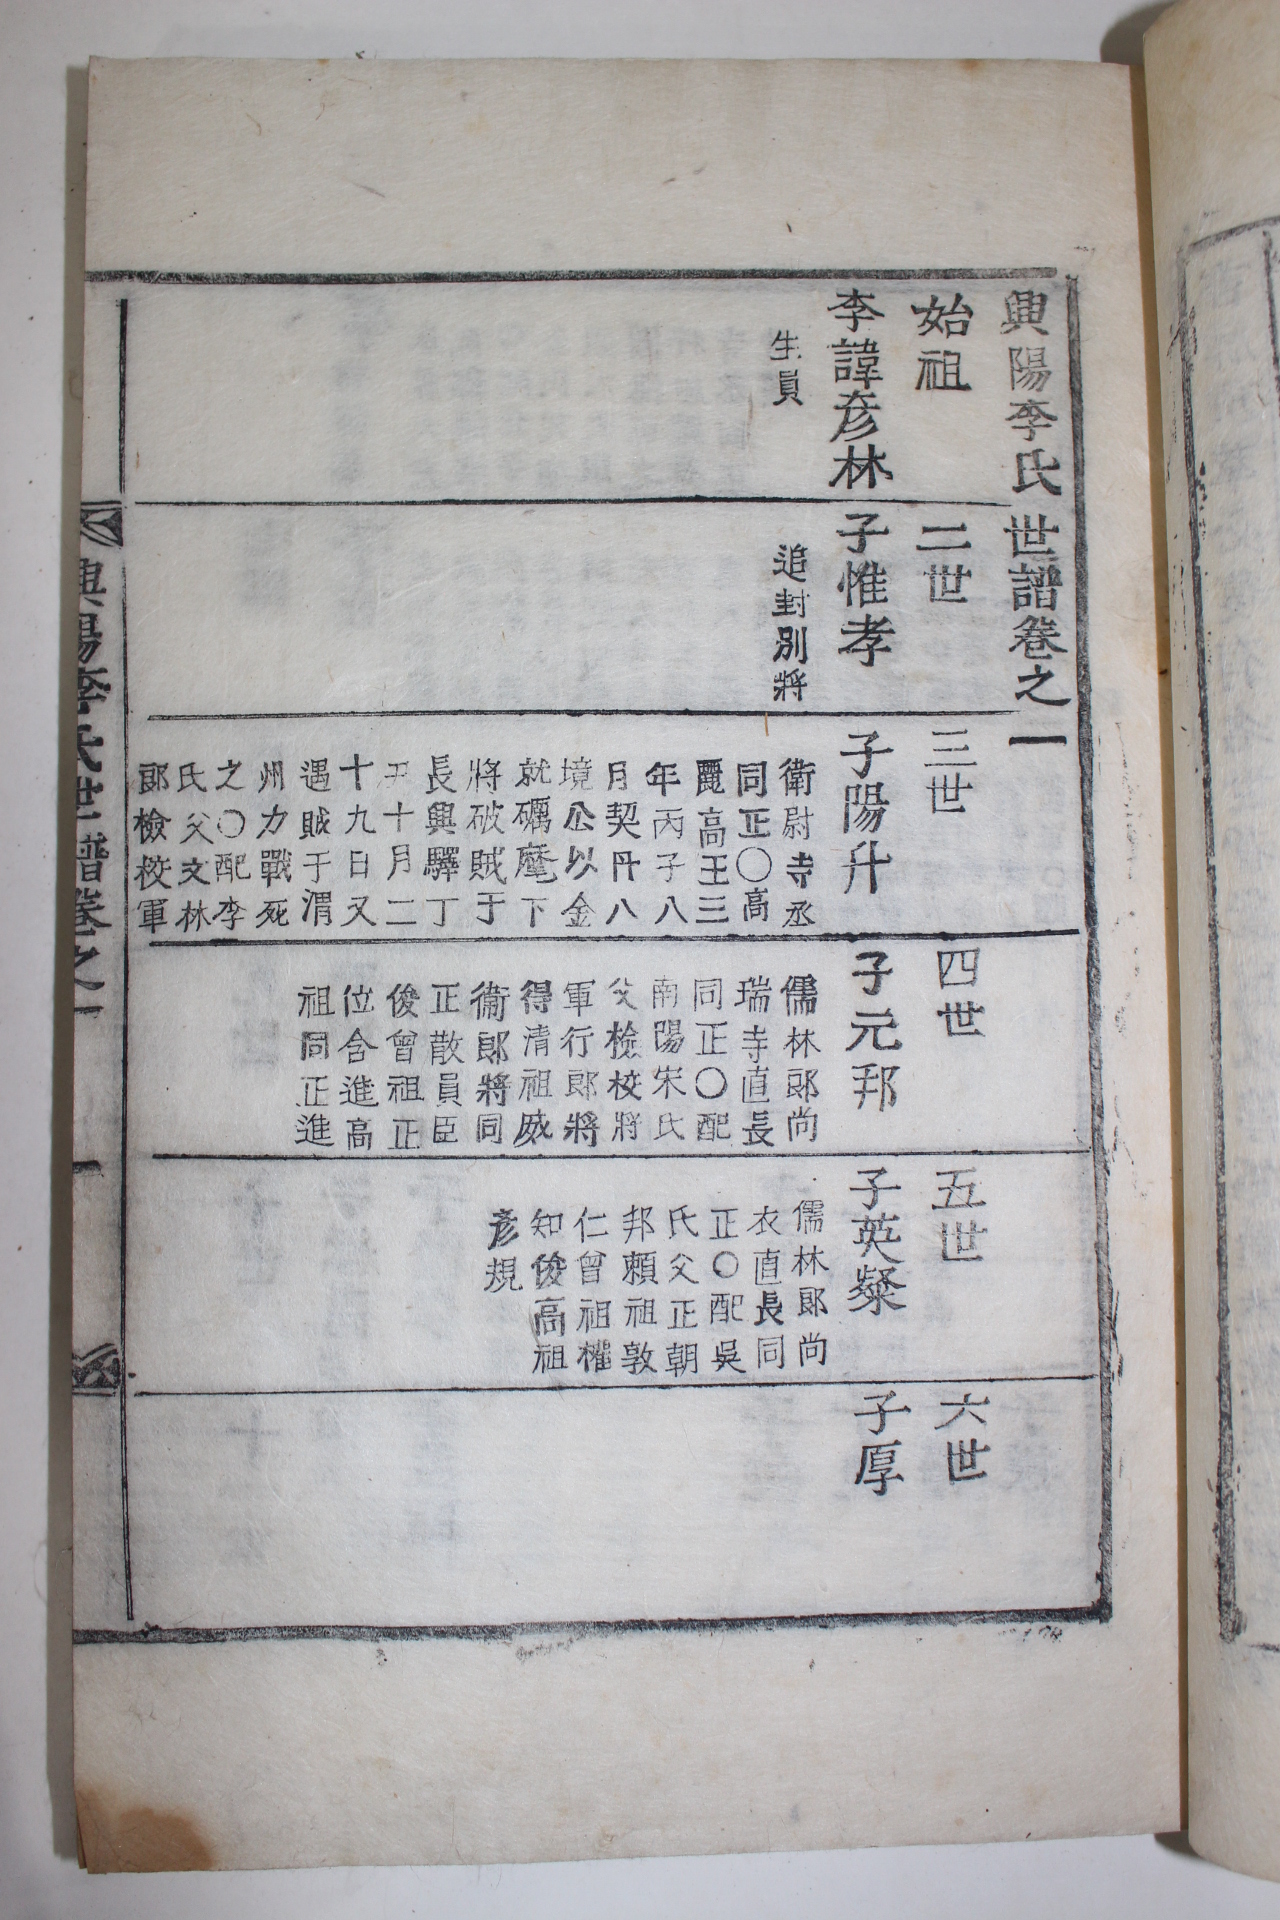 1803년(계해)목활자본 흥양이씨족보(興陽李氏族譜) 6권6책완질